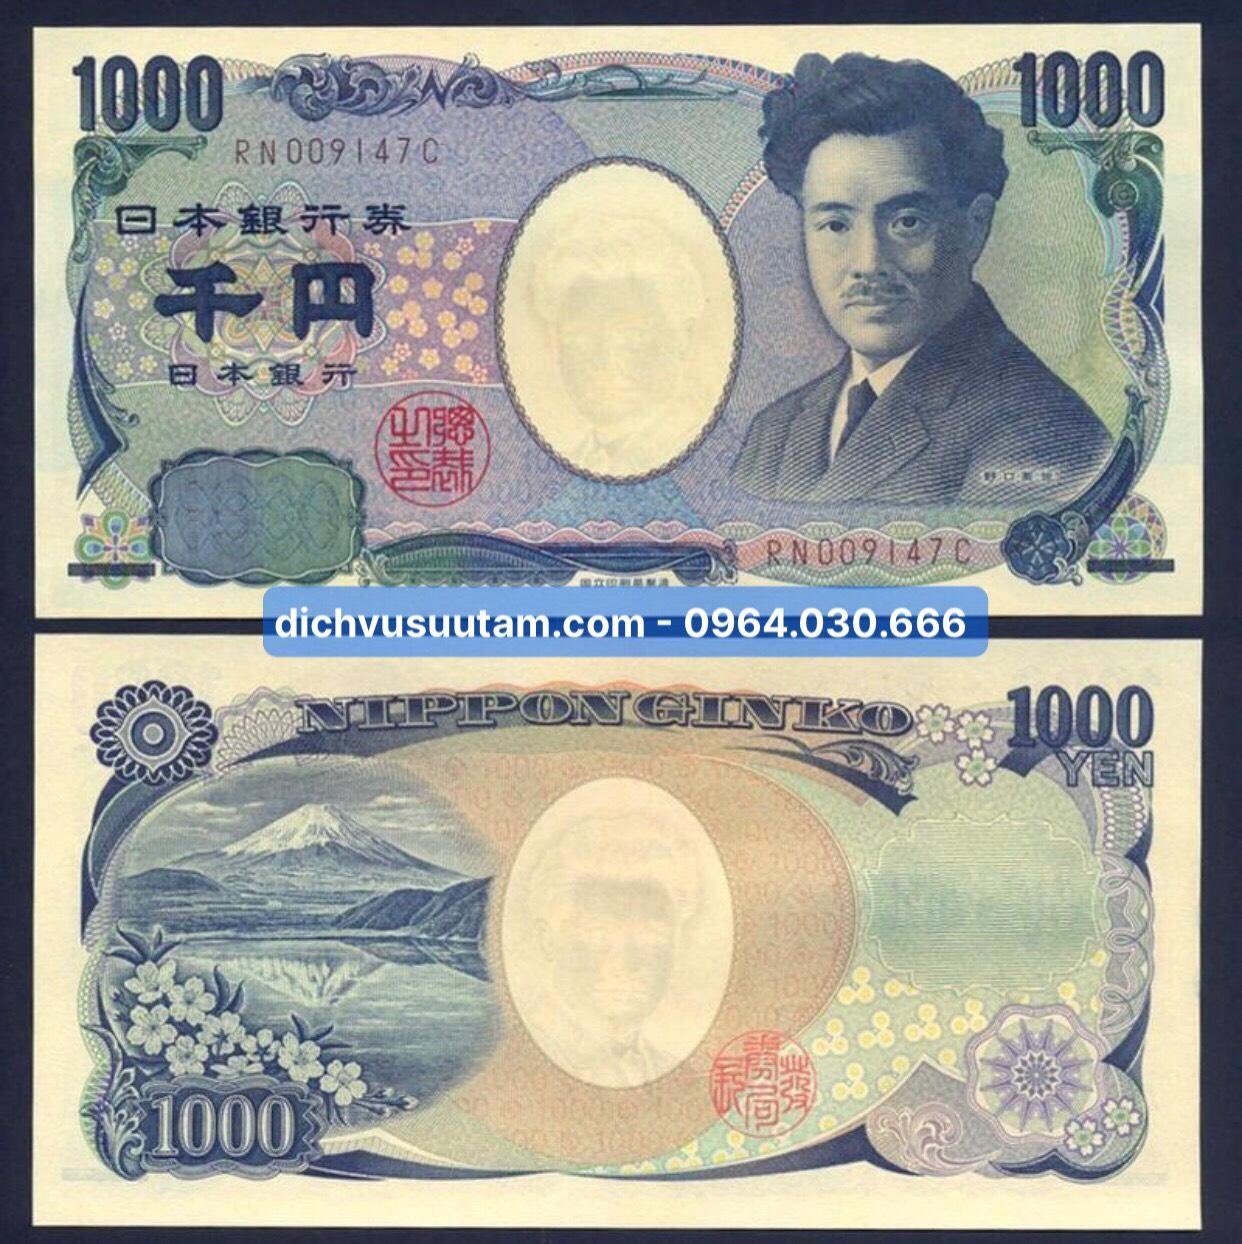 Tien Nhật Bản mệnh gia 1000 yên sưu tầm, tiền mới 95%